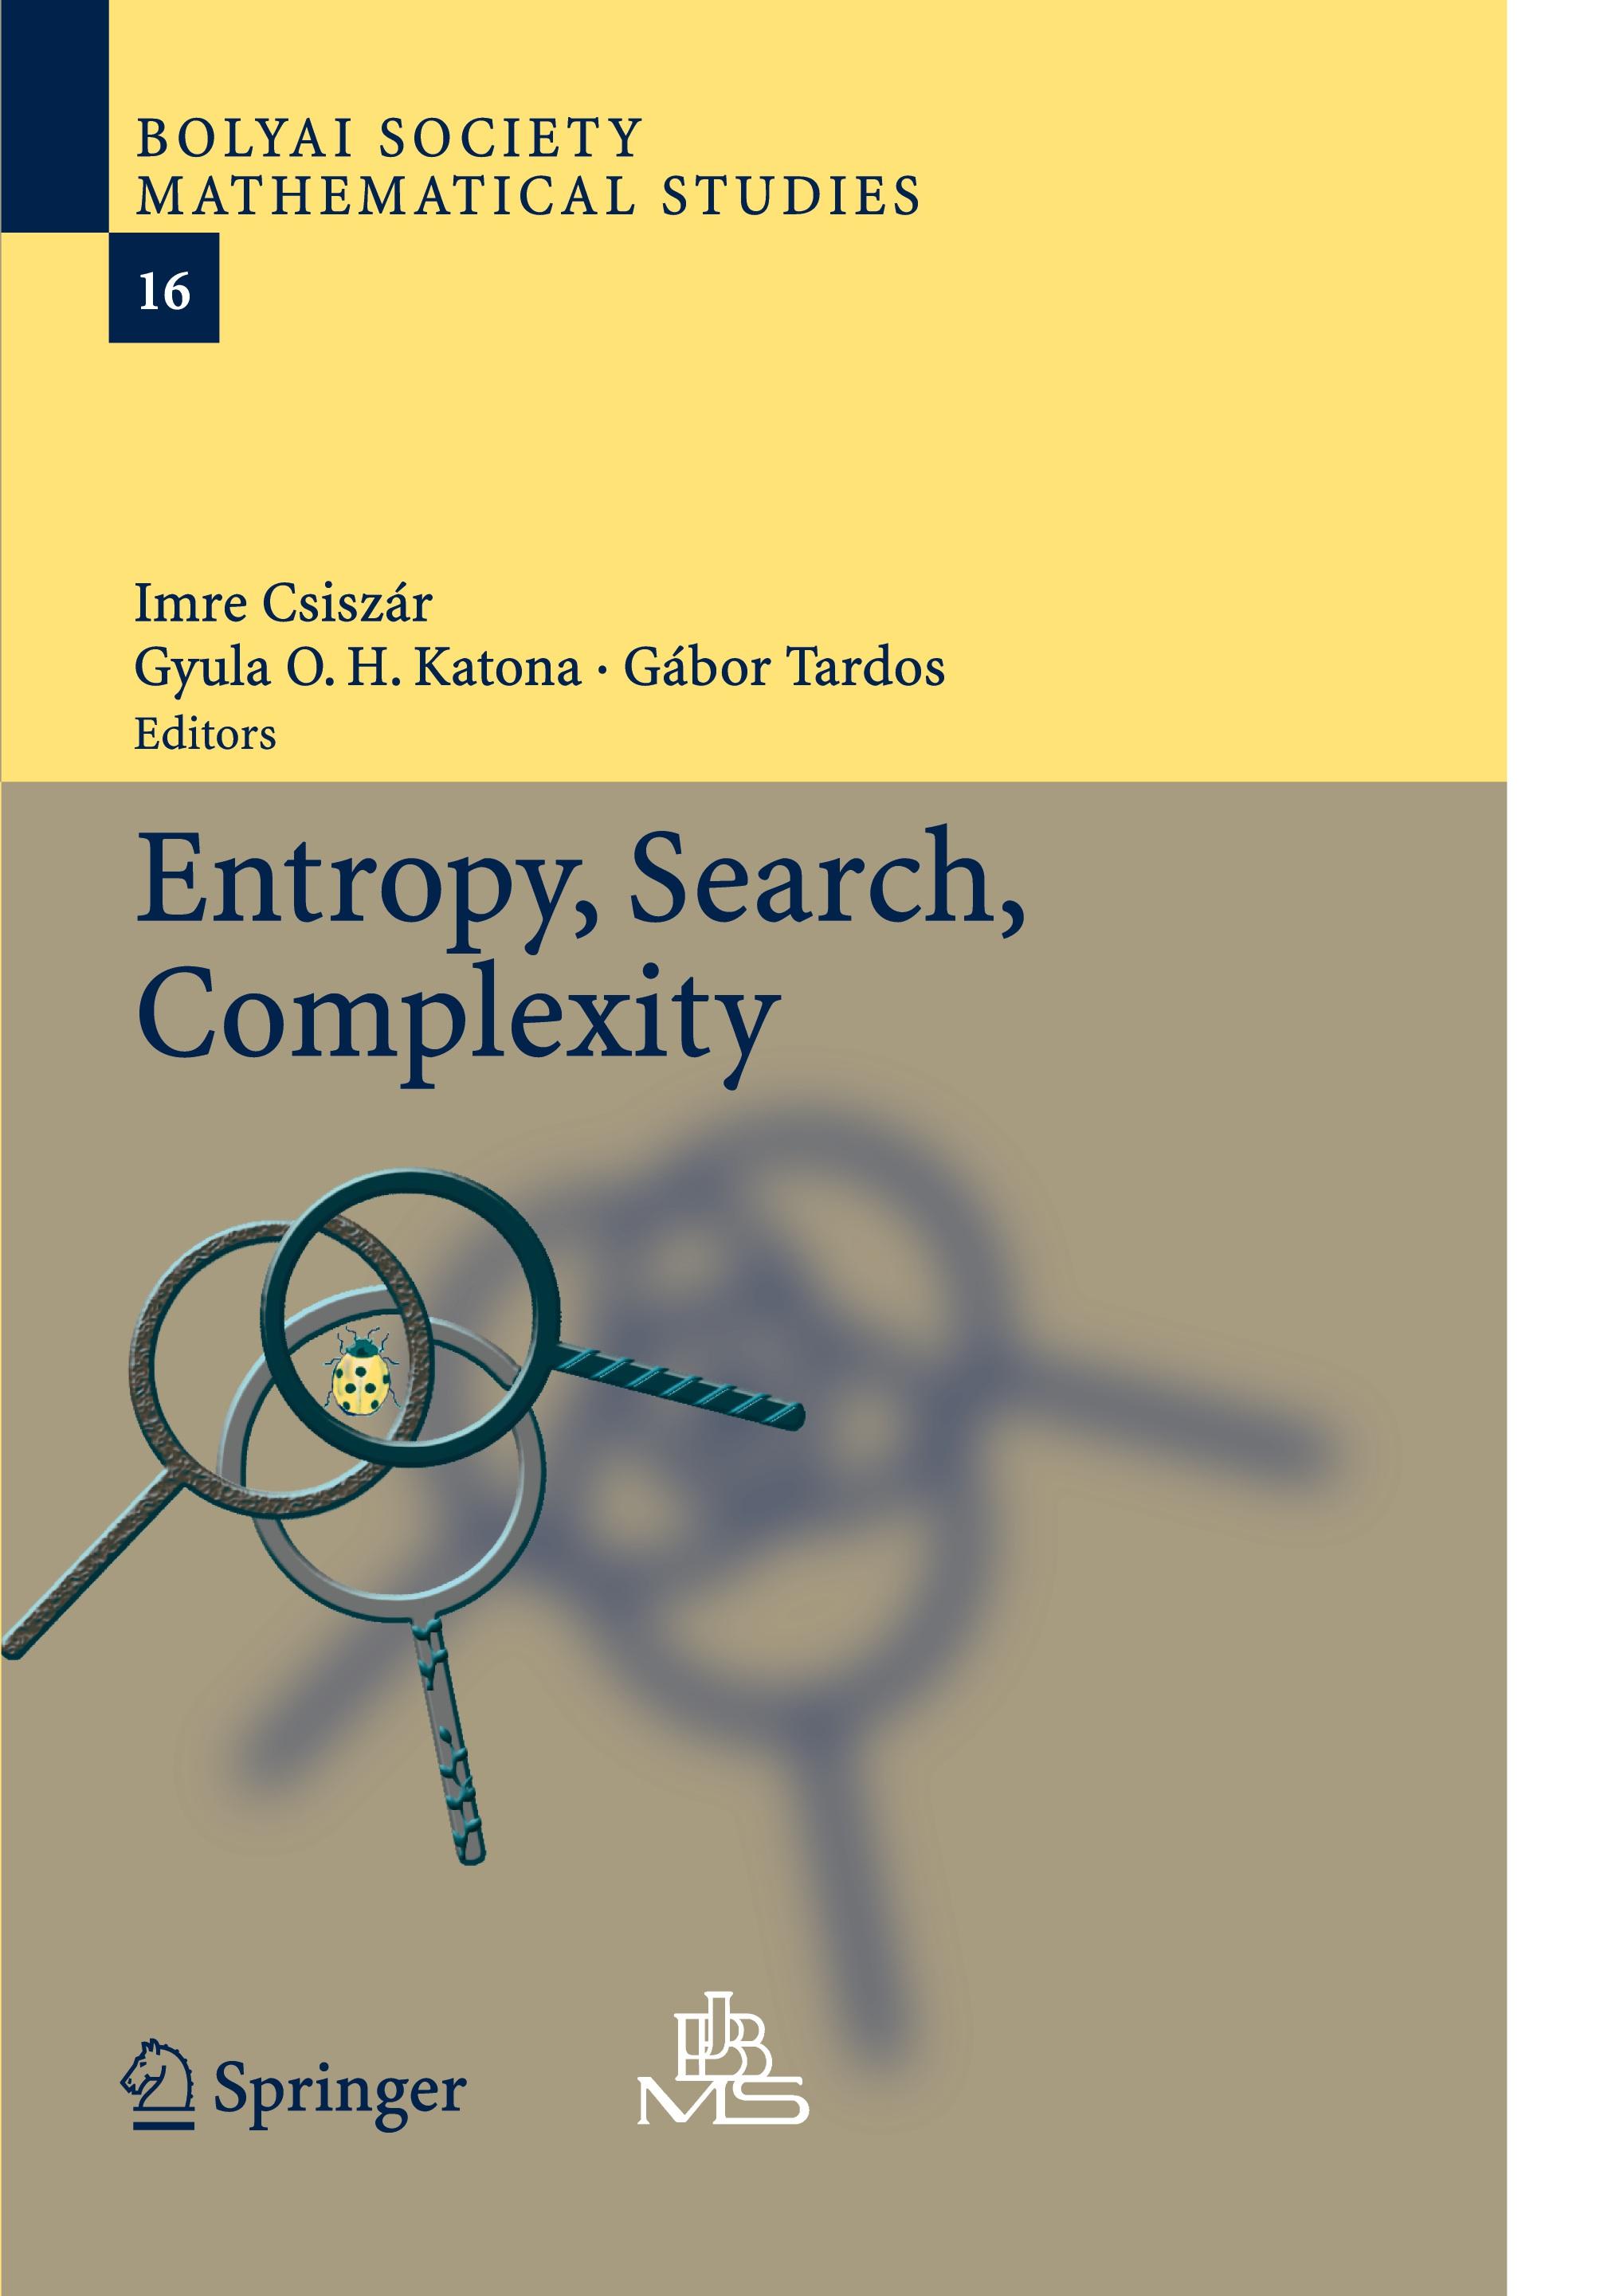 Entropy, Search, Complexity - Csiszár, Imre|Katona, Gyula O.H.|Tardos, Gabor